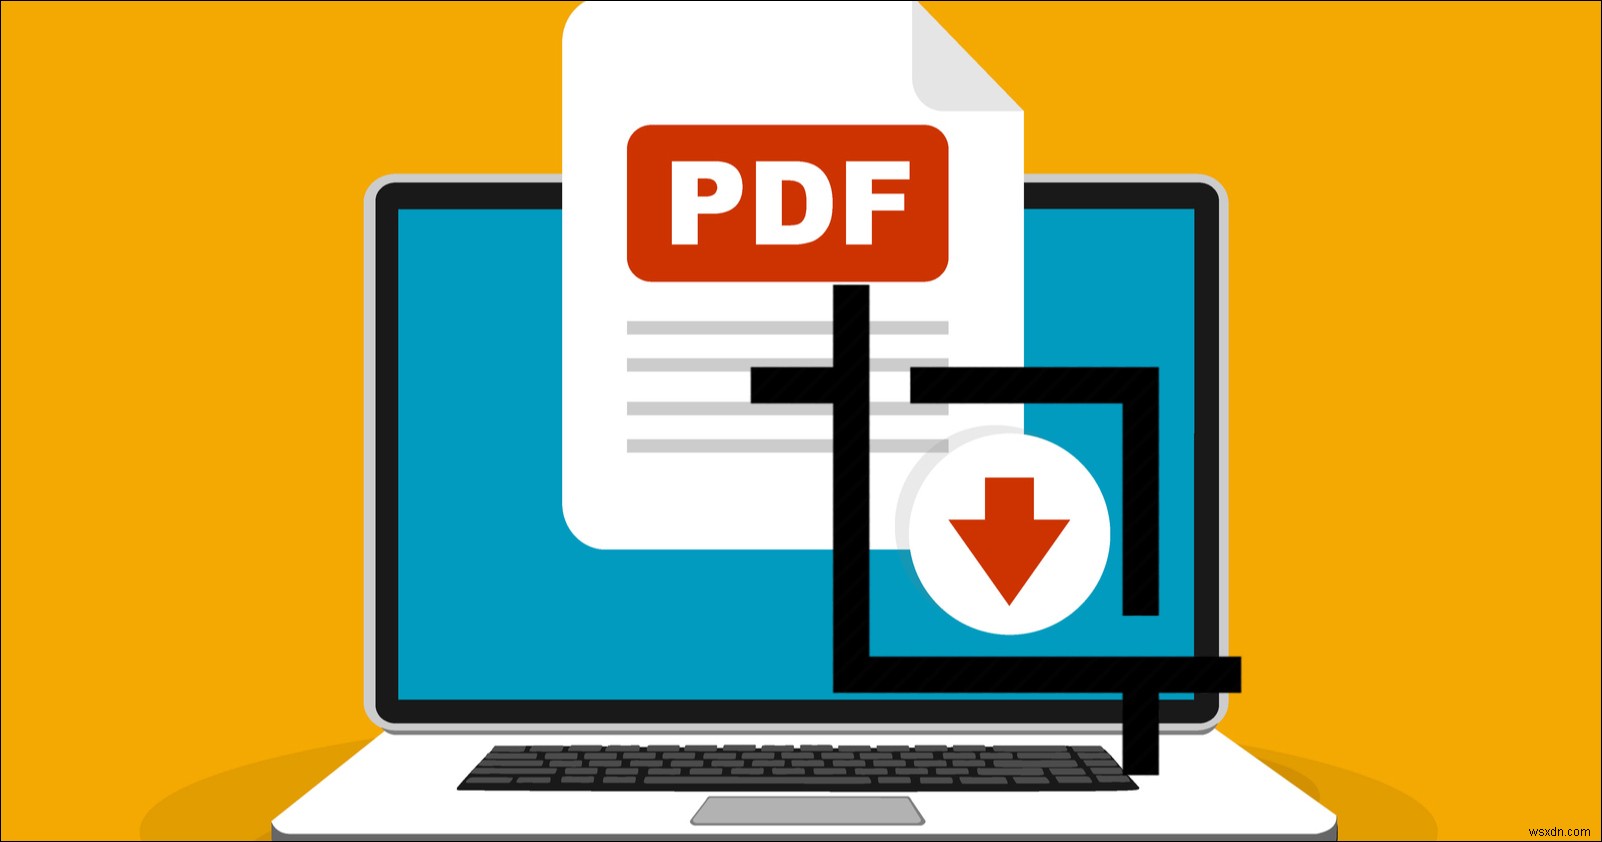 PDF 페이지를 쉽게 자르거나 크기를 조정하는 방법은 무엇입니까? 